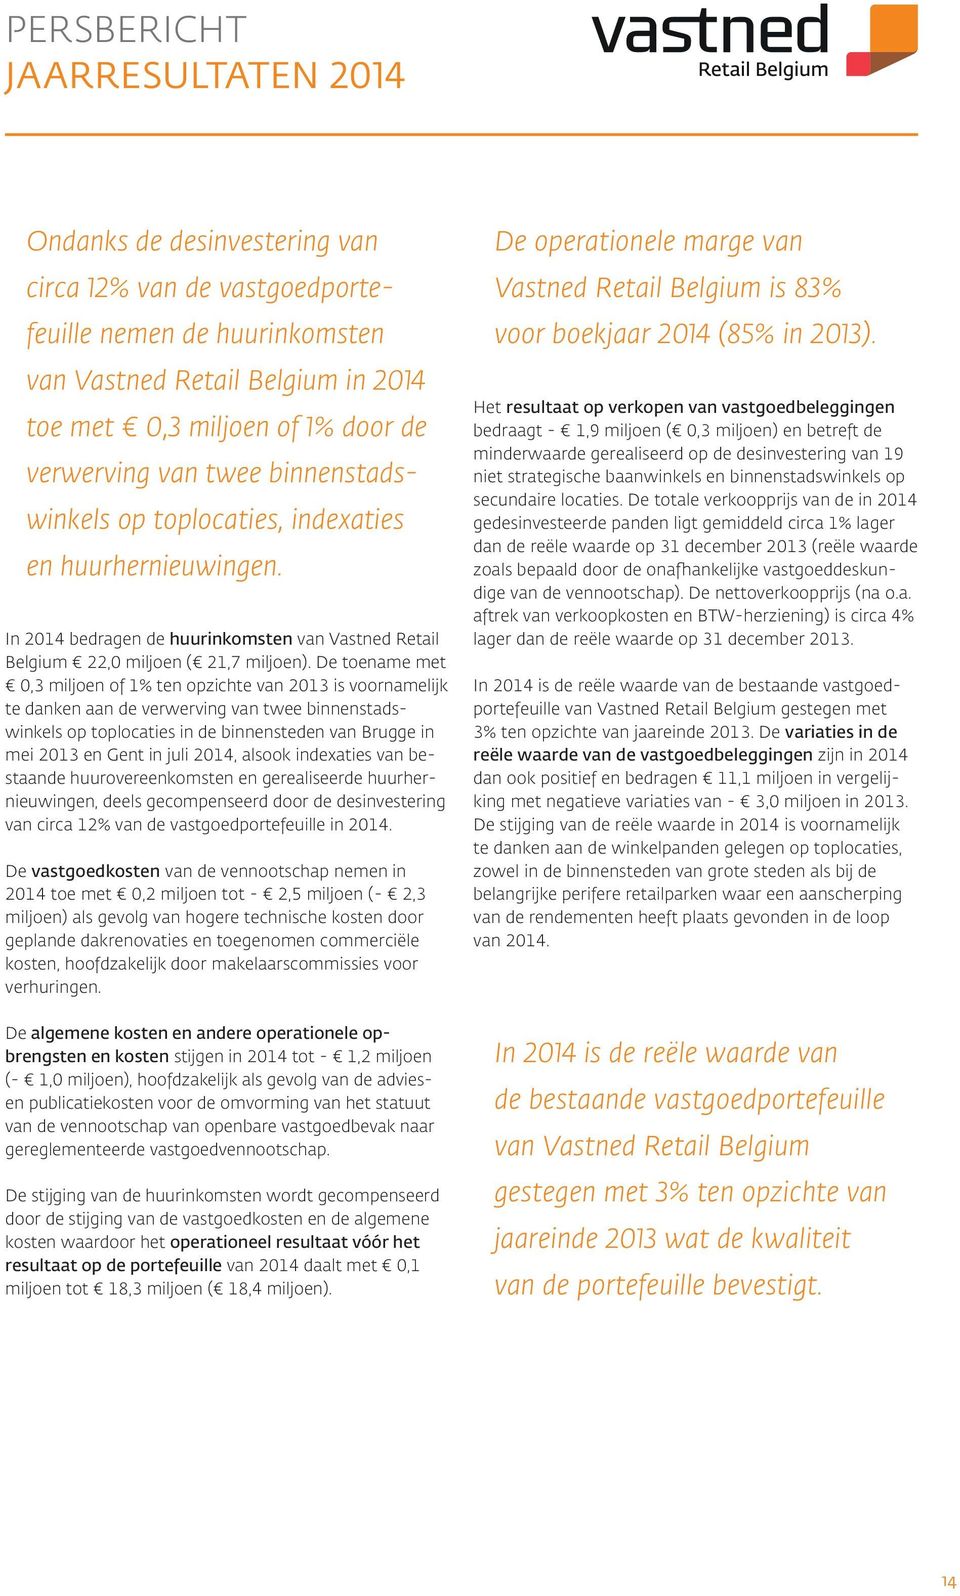 De toename met 0,3 miljoen of 1% ten opzichte van 2013 is voornamelijk te danken aan de verwerving van twee binnenstadswinkels op toplocaties in de binnensteden van Brugge in mei 2013 en Gent in juli